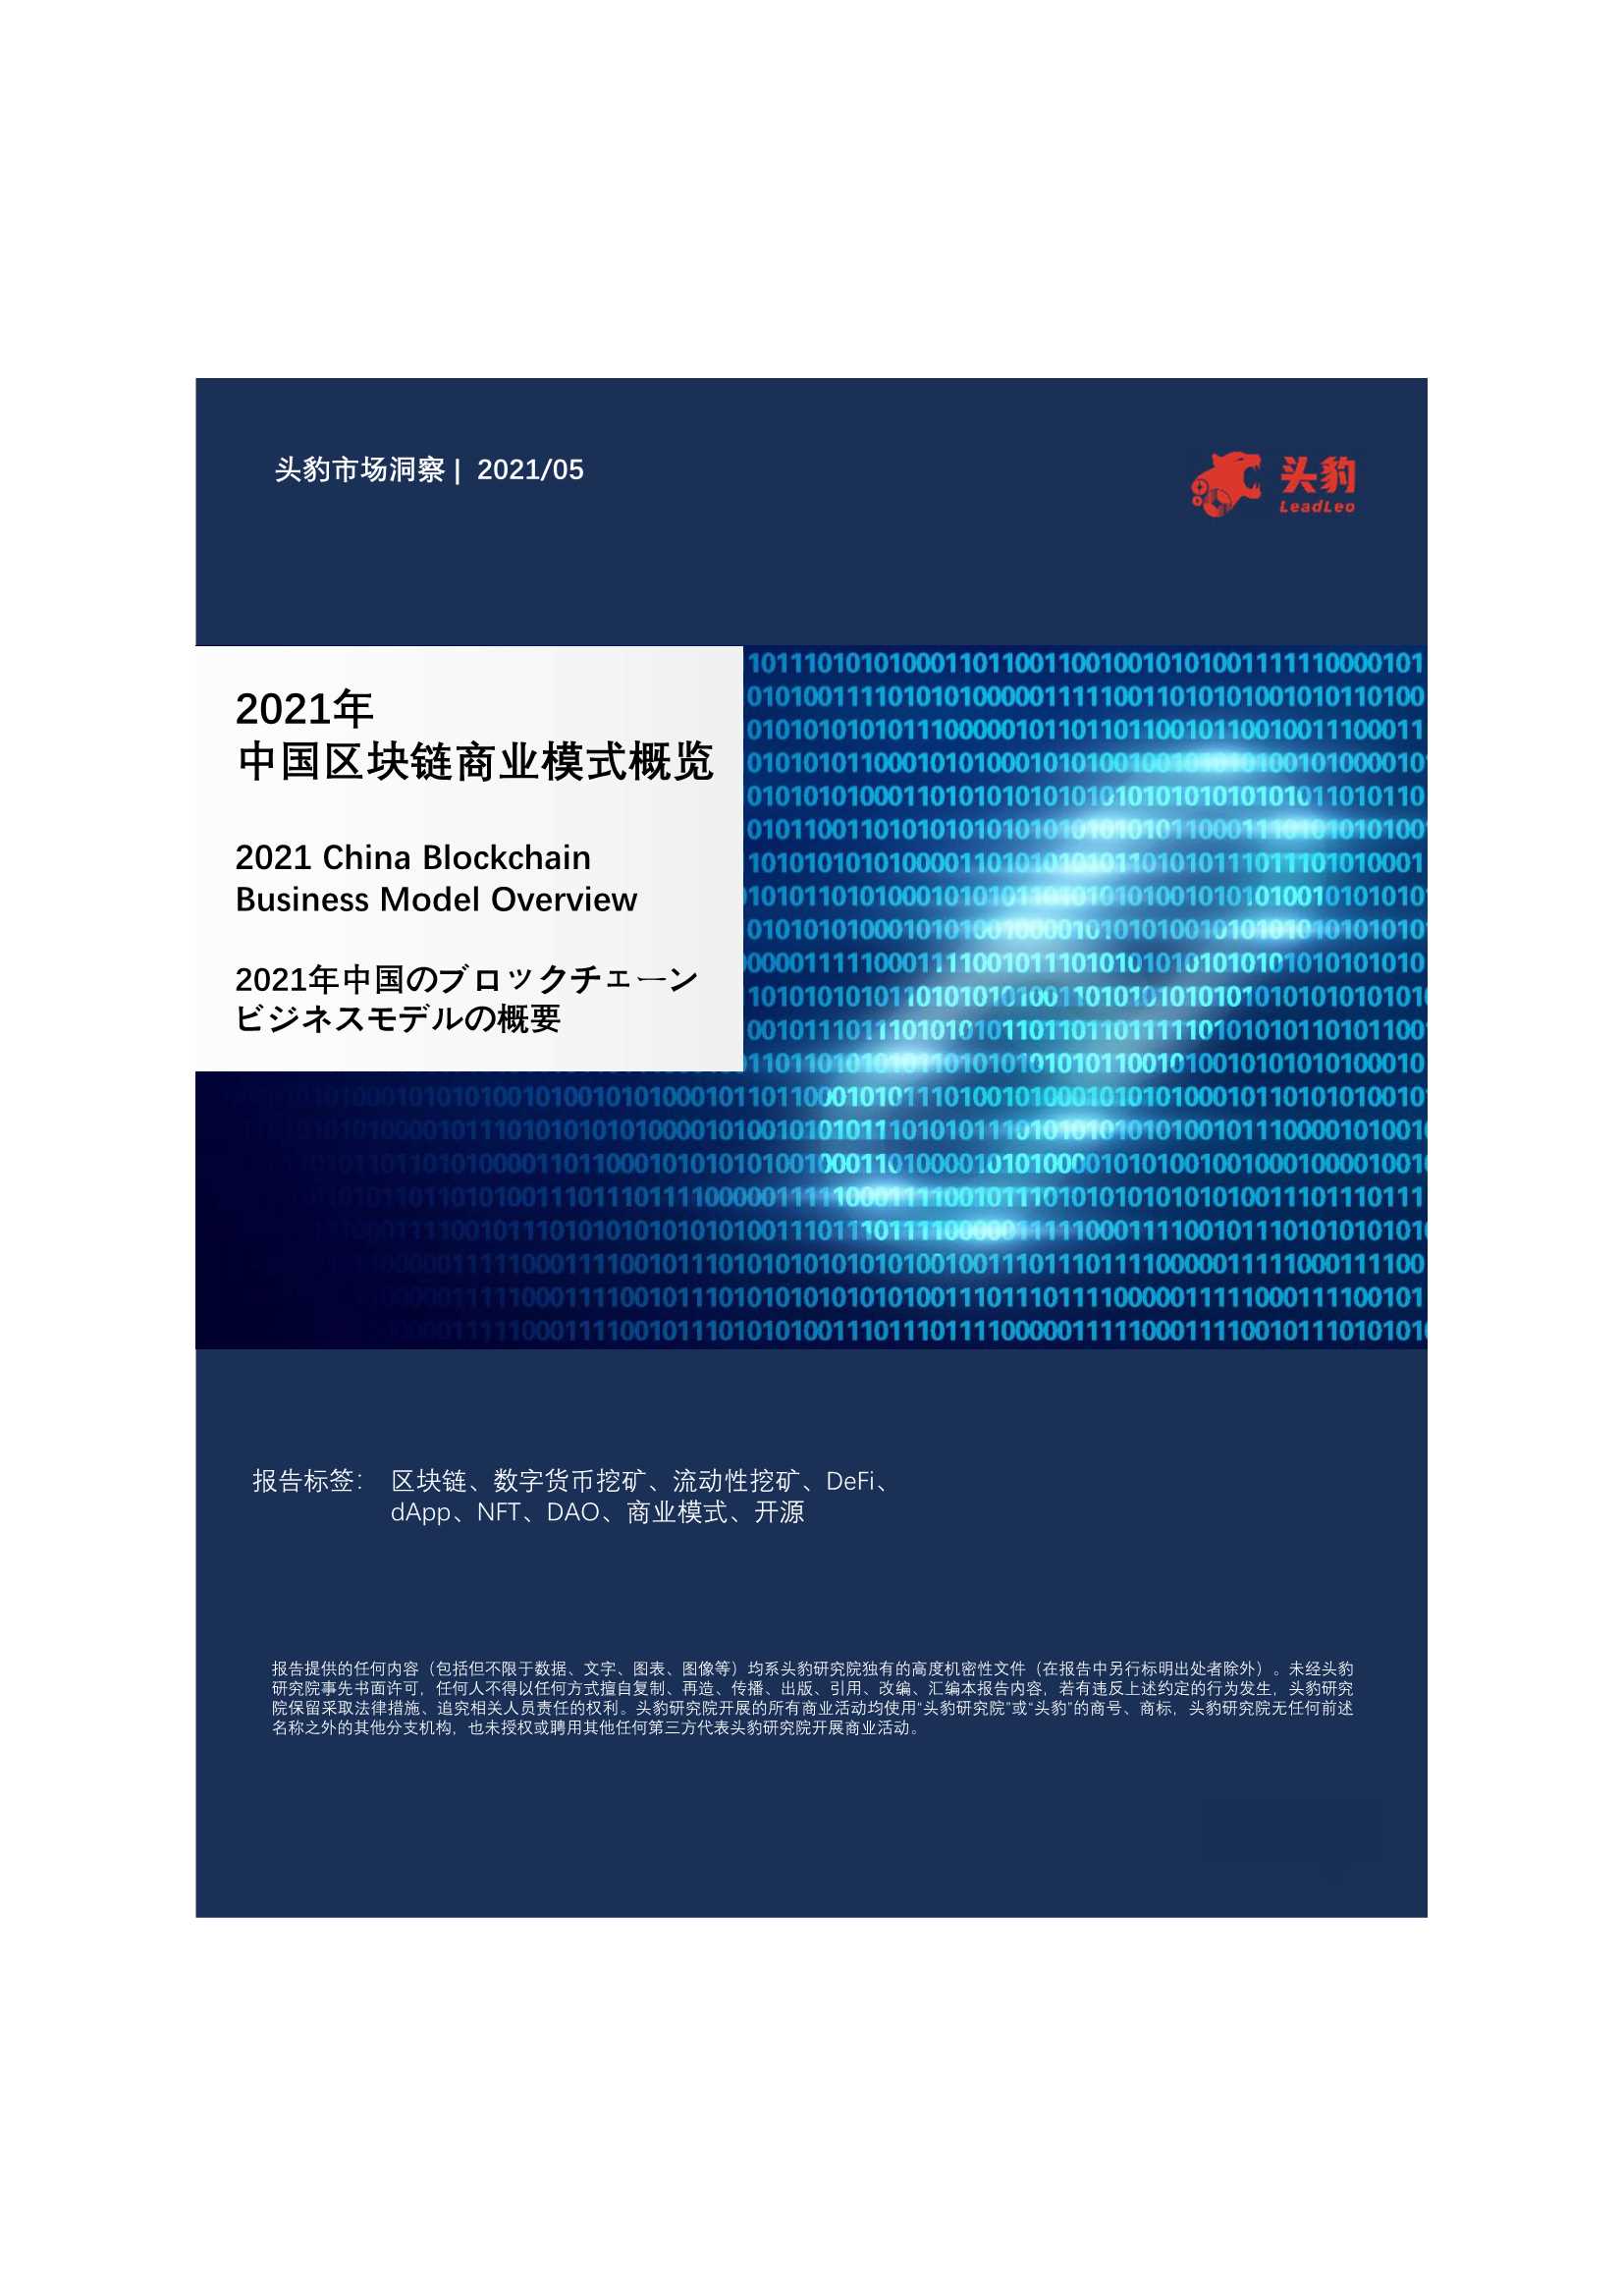 头豹研究院-2021年中国区块链商业模式概览-2021.06-38页